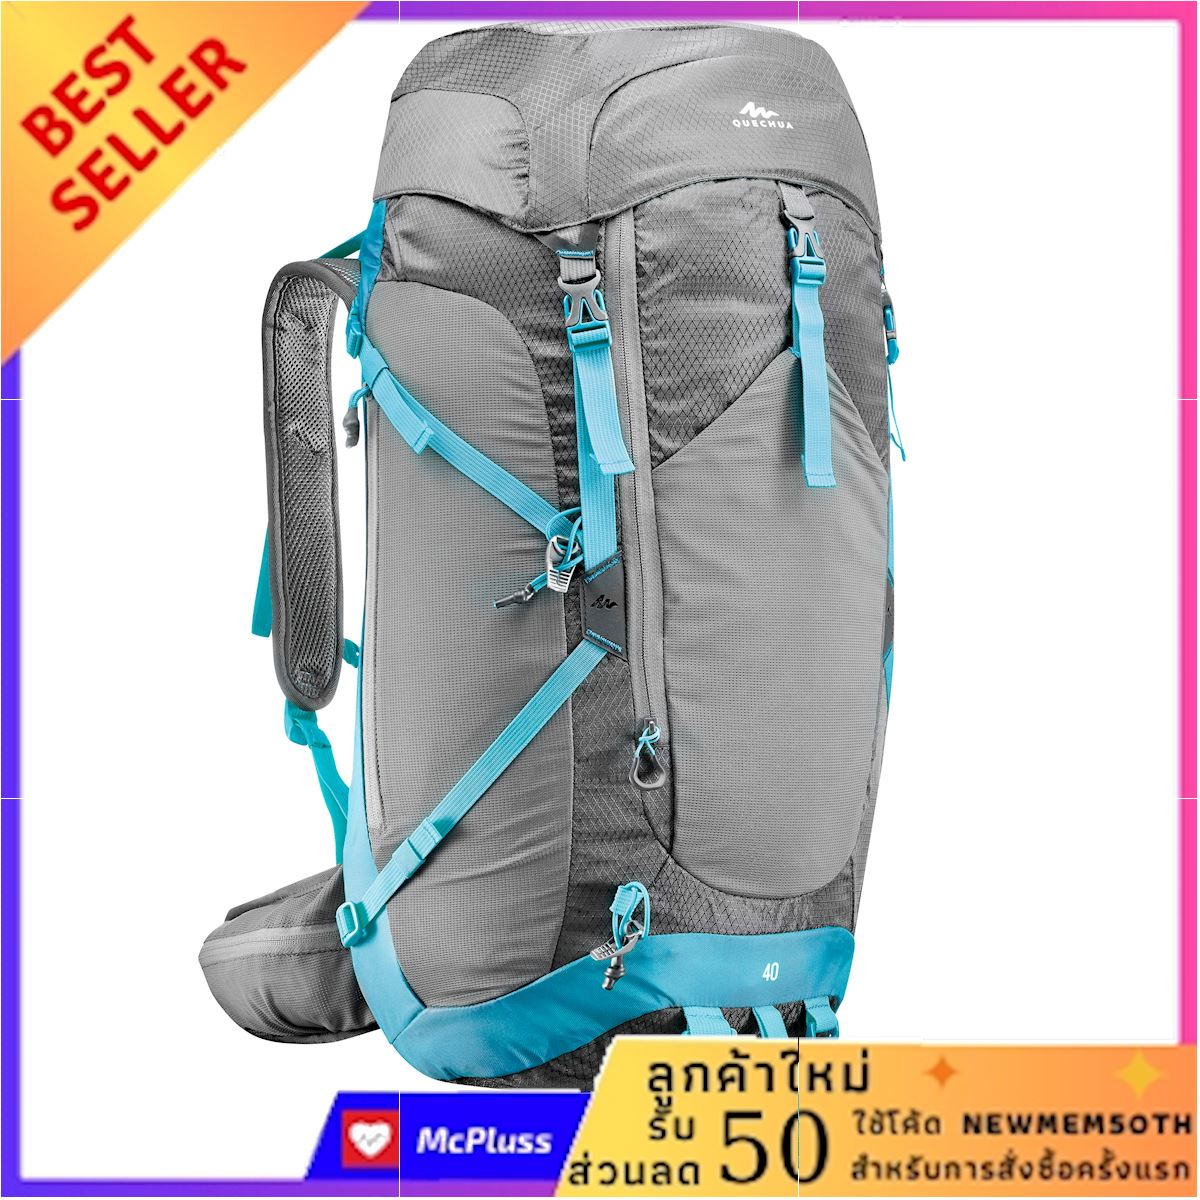 เป้สะพายหลังเพื่อการเดินป่าบนภูเขาสำหรับผู้หญิงรุ่น MH500 ขนาด 40 ลิตร (สีเทา/ฟ้า) กระเป๋าสะพายหลังสำหรับปีนเขา เดินท่องเที่ยวในป่า ไม่พอใจยินดีคืนเงิน